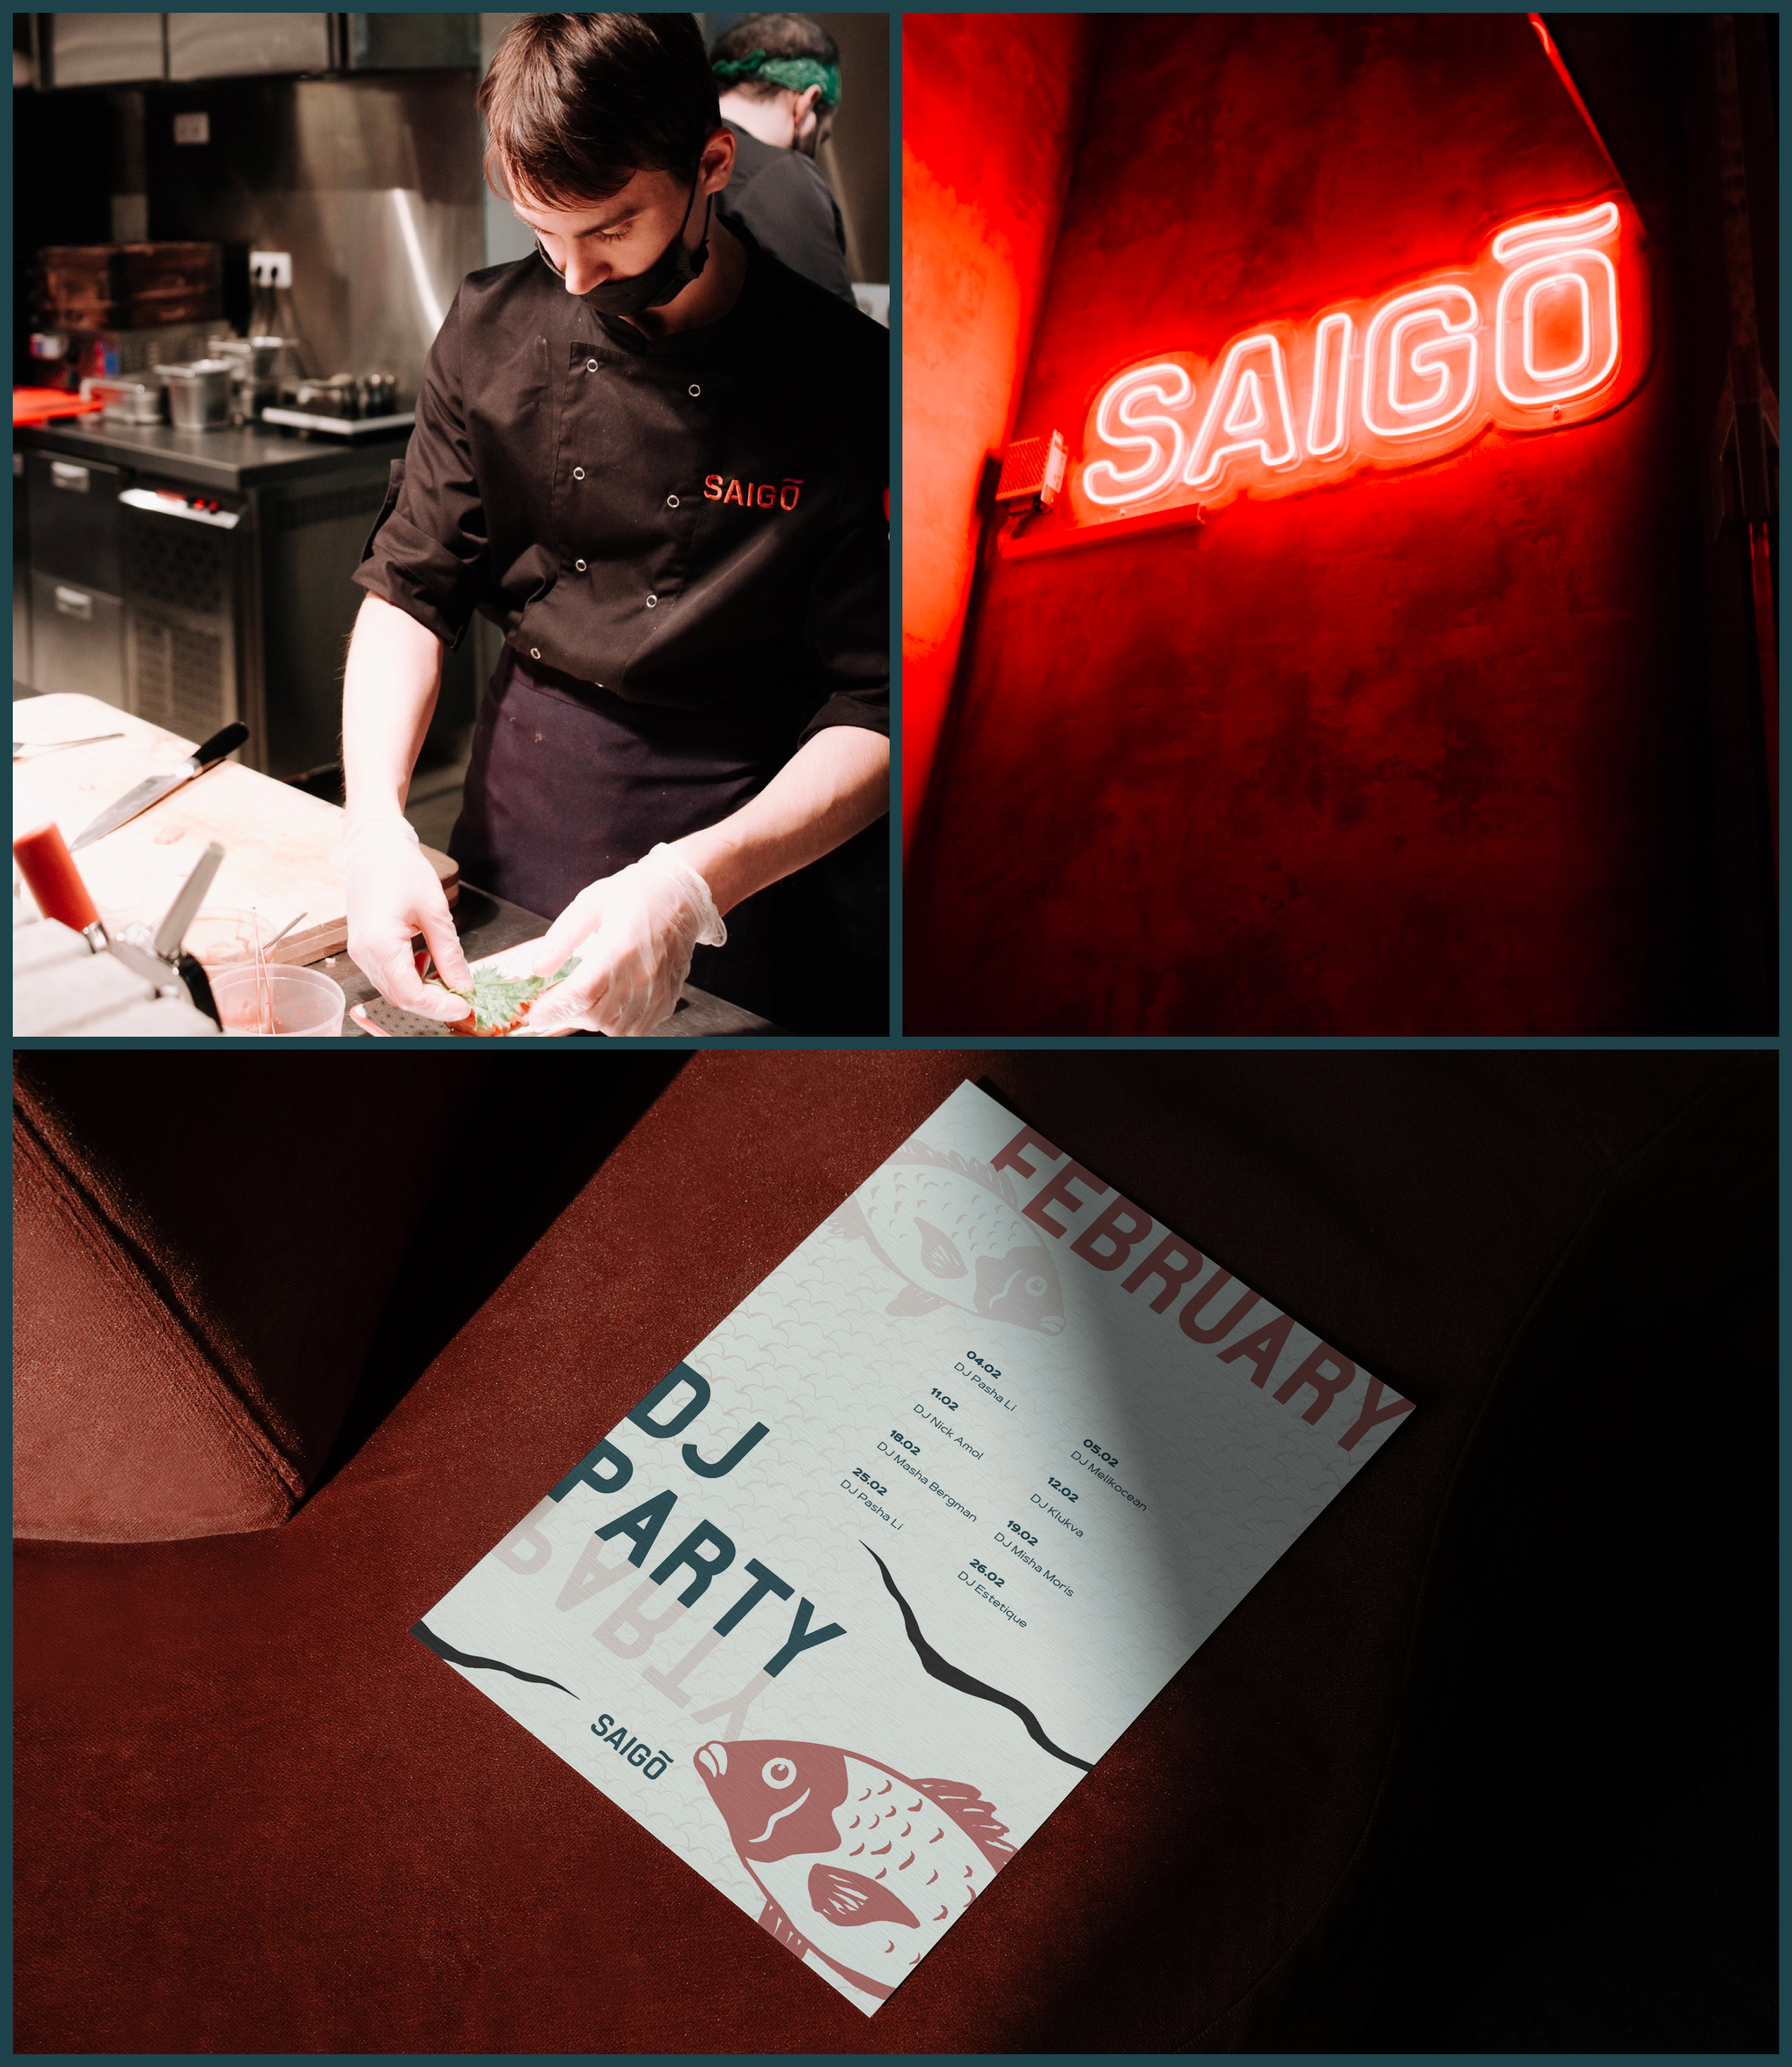 Лого & Айдентика для ресторана Saigo — Изображение №9 — Брендинг, Иллюстрация на Dprofile